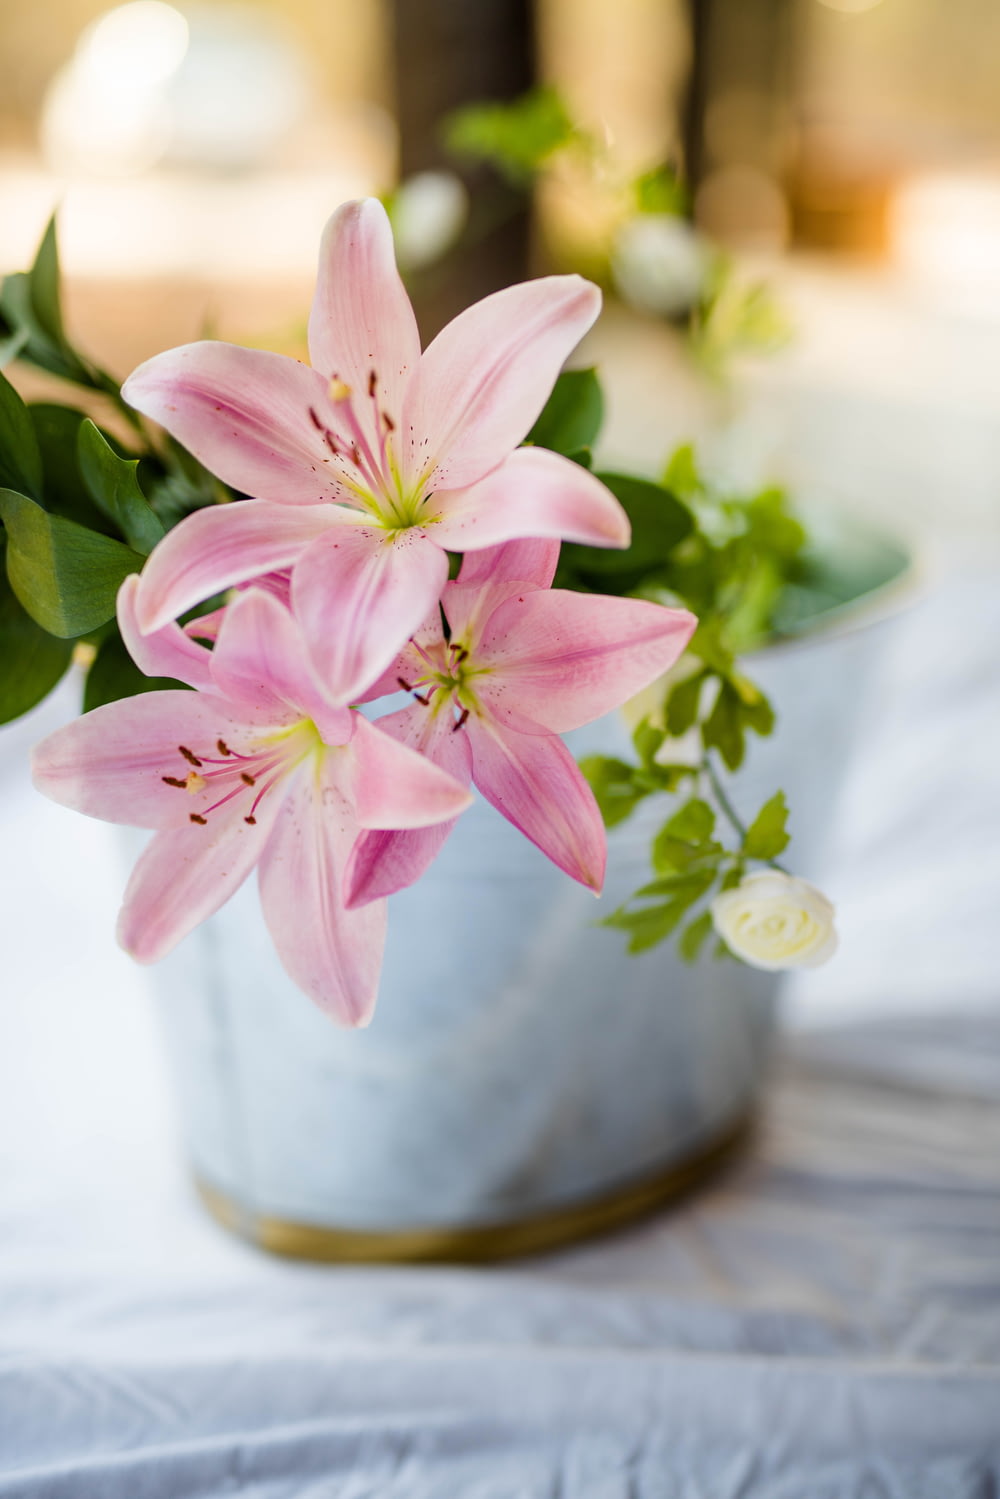 pianta da fiore rosa in vaso bianco